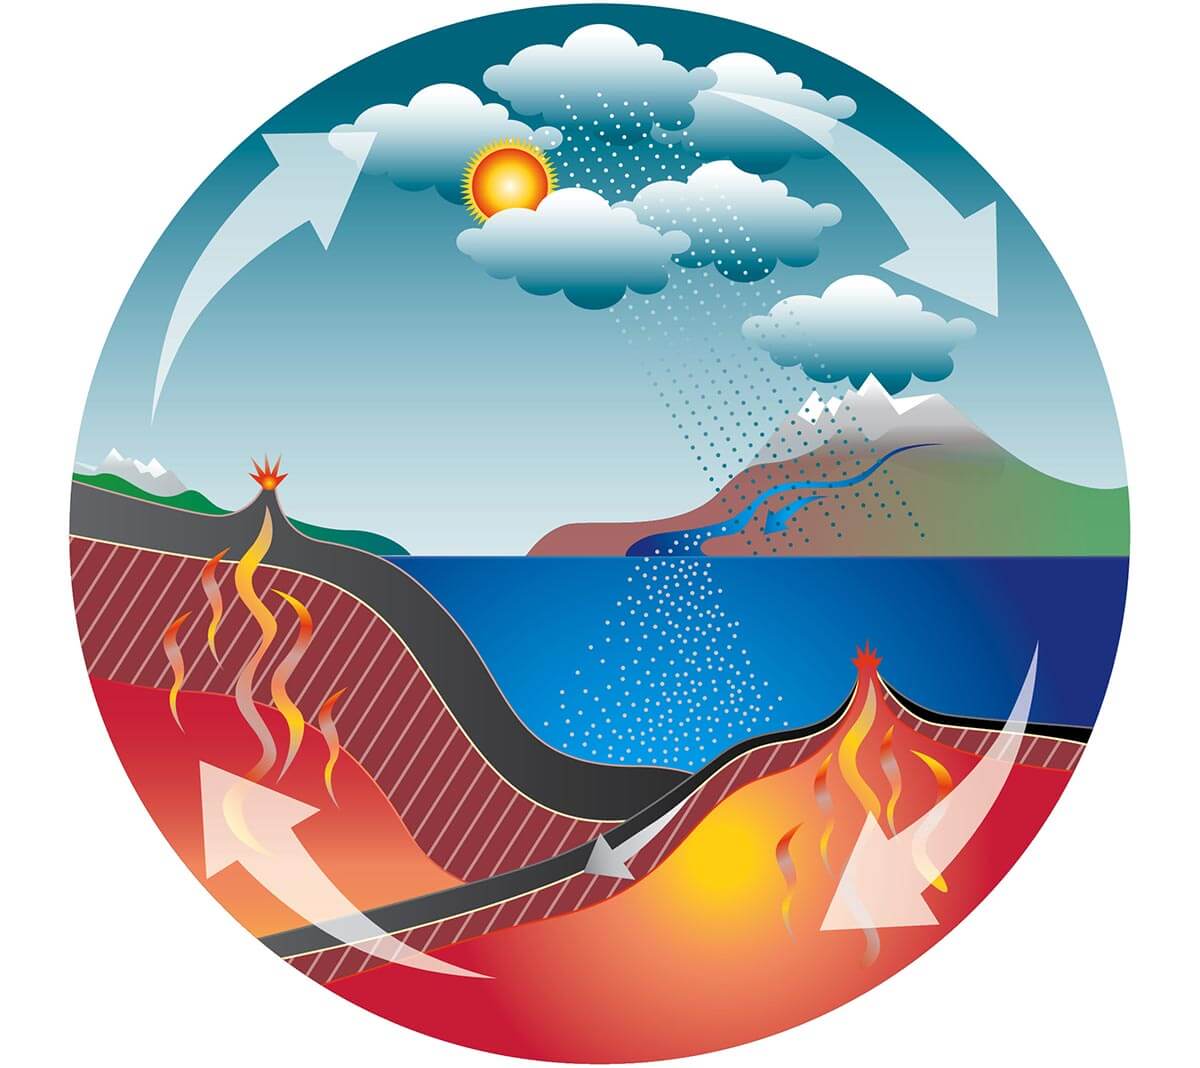 תהליך הבלייה של סלעי סיליקאט הוא חלק ממה שנקרה "מחזור הפחמן" (carbon cycle) המשמר את טמפרטורת האקלים שעל פני כדור הארץ לאורך זמן ממושך. [באדיבות: © Universität Bern / University of Bern; אילוסטרציה: Jenny Leibundgut]